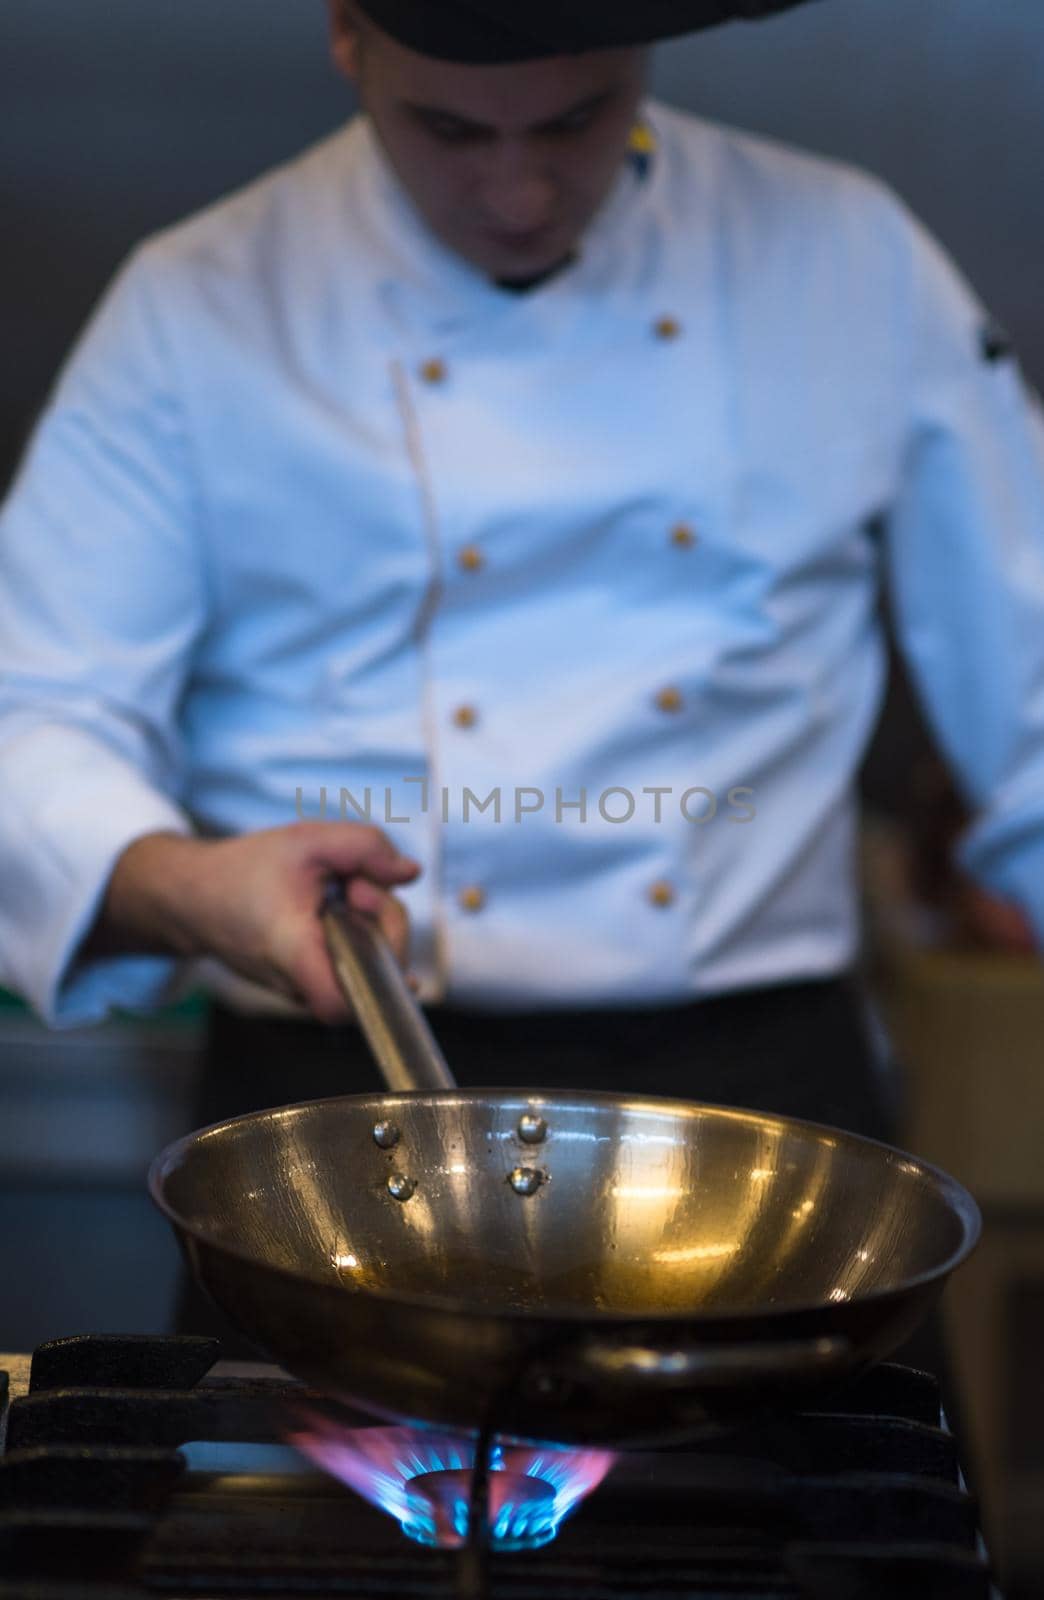 chef preparing food, frying in wok pan by dotshock